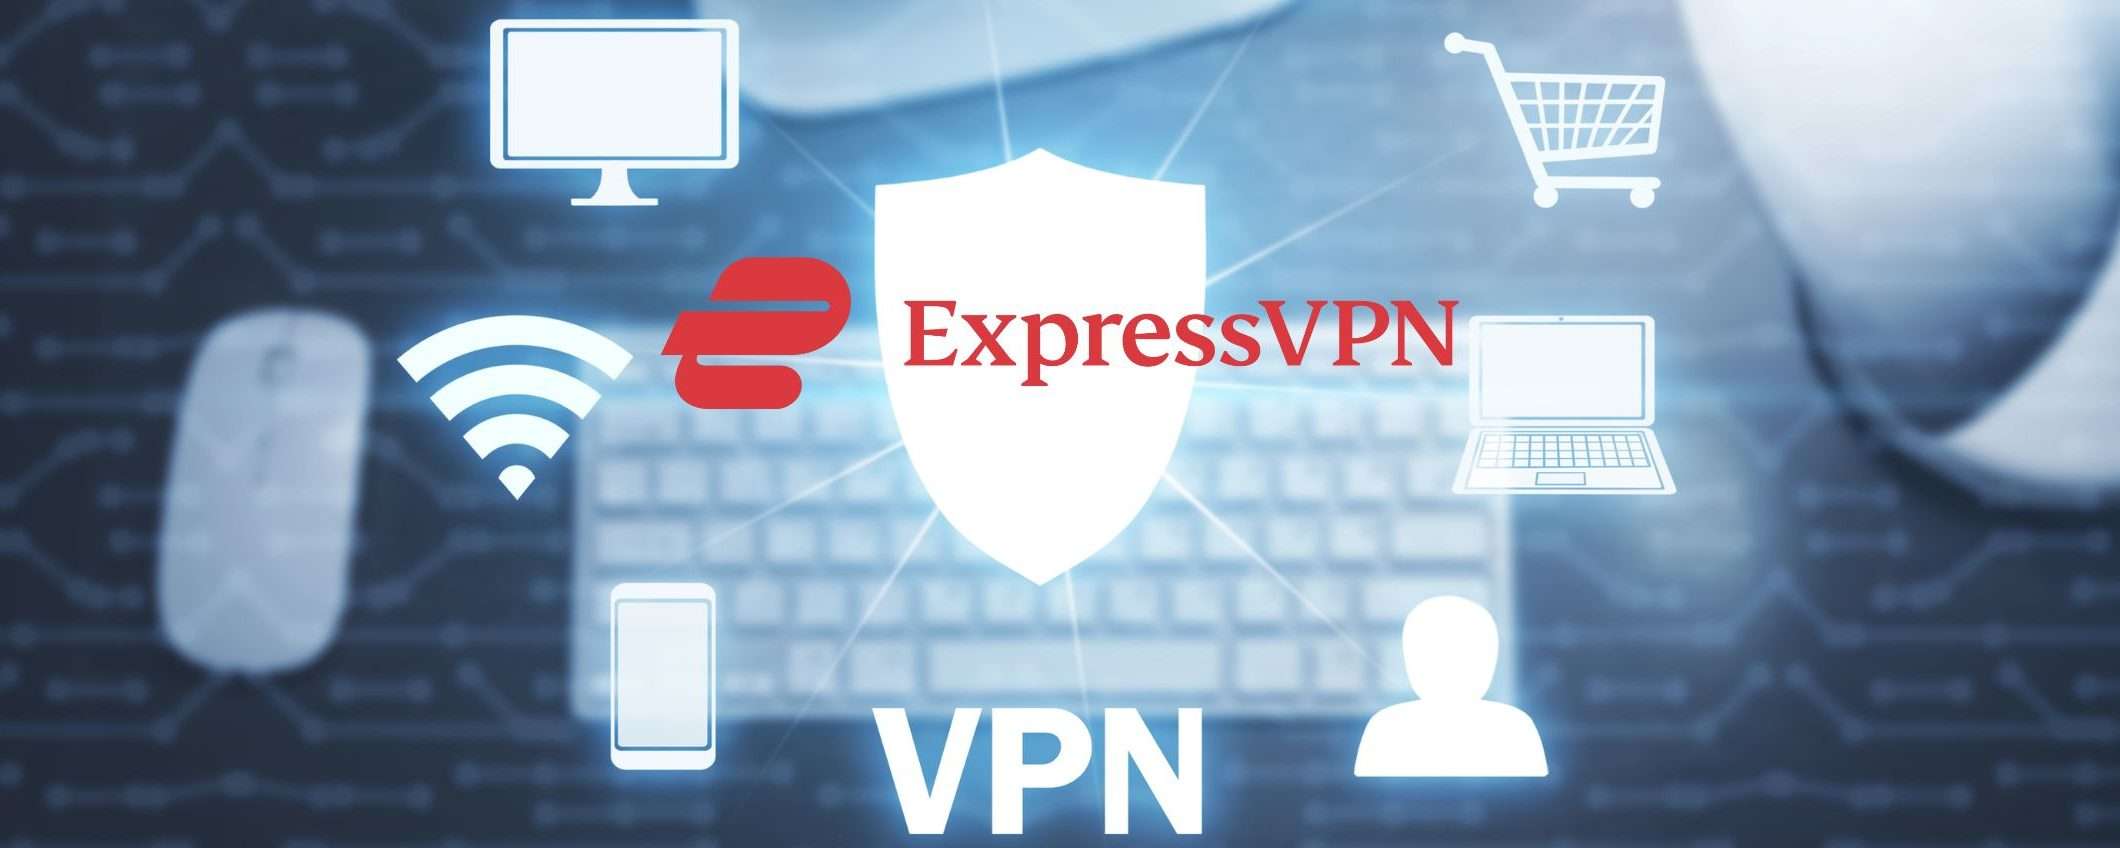 ExpressVPN a 6,30€: sicurezza online per 15 mesi